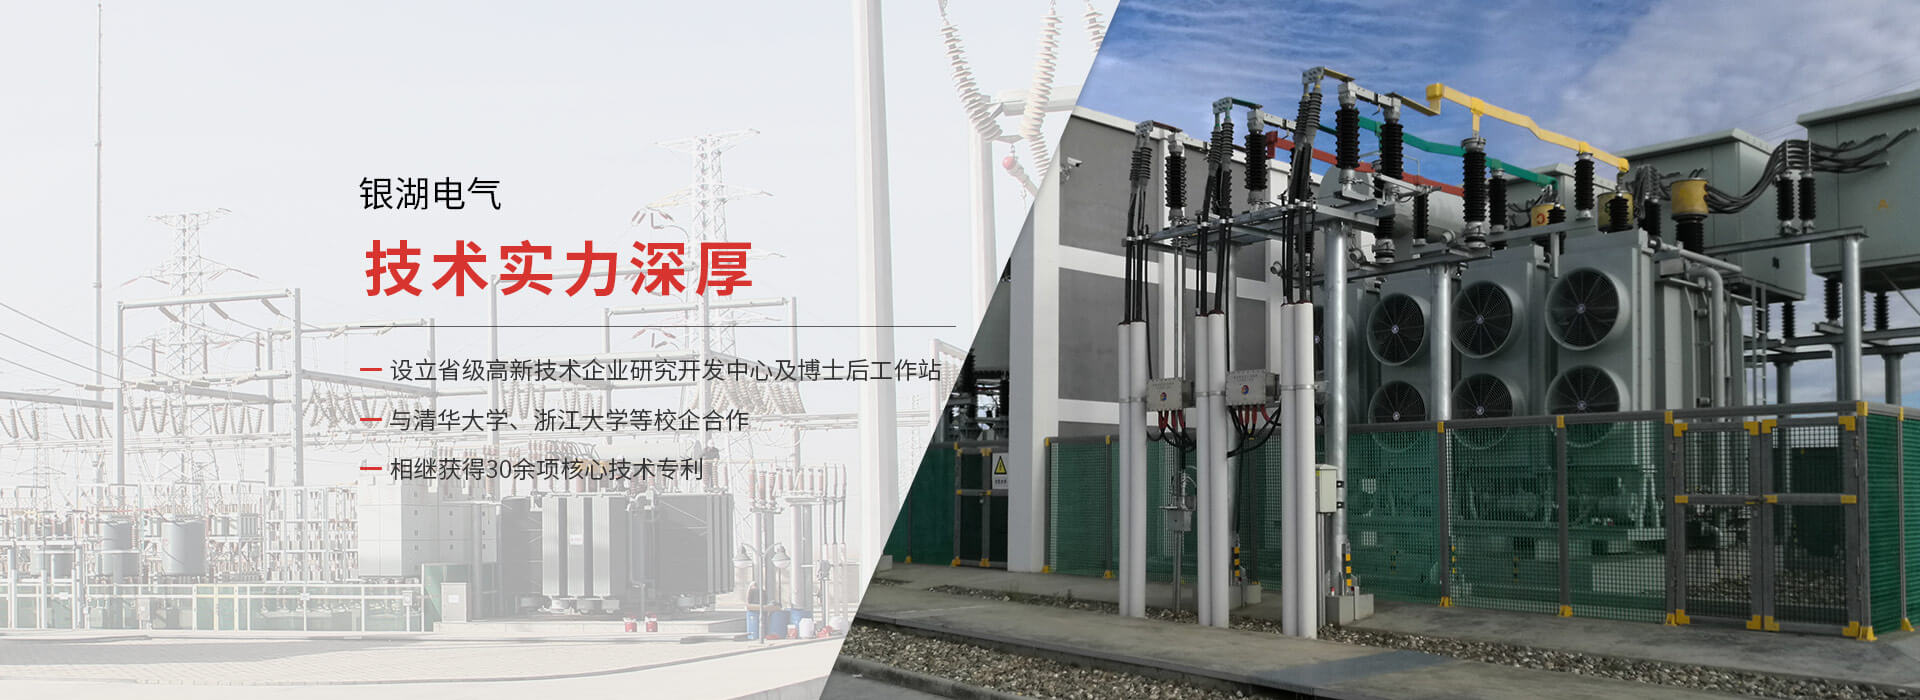 杭州銀湖電氣設備有限公司